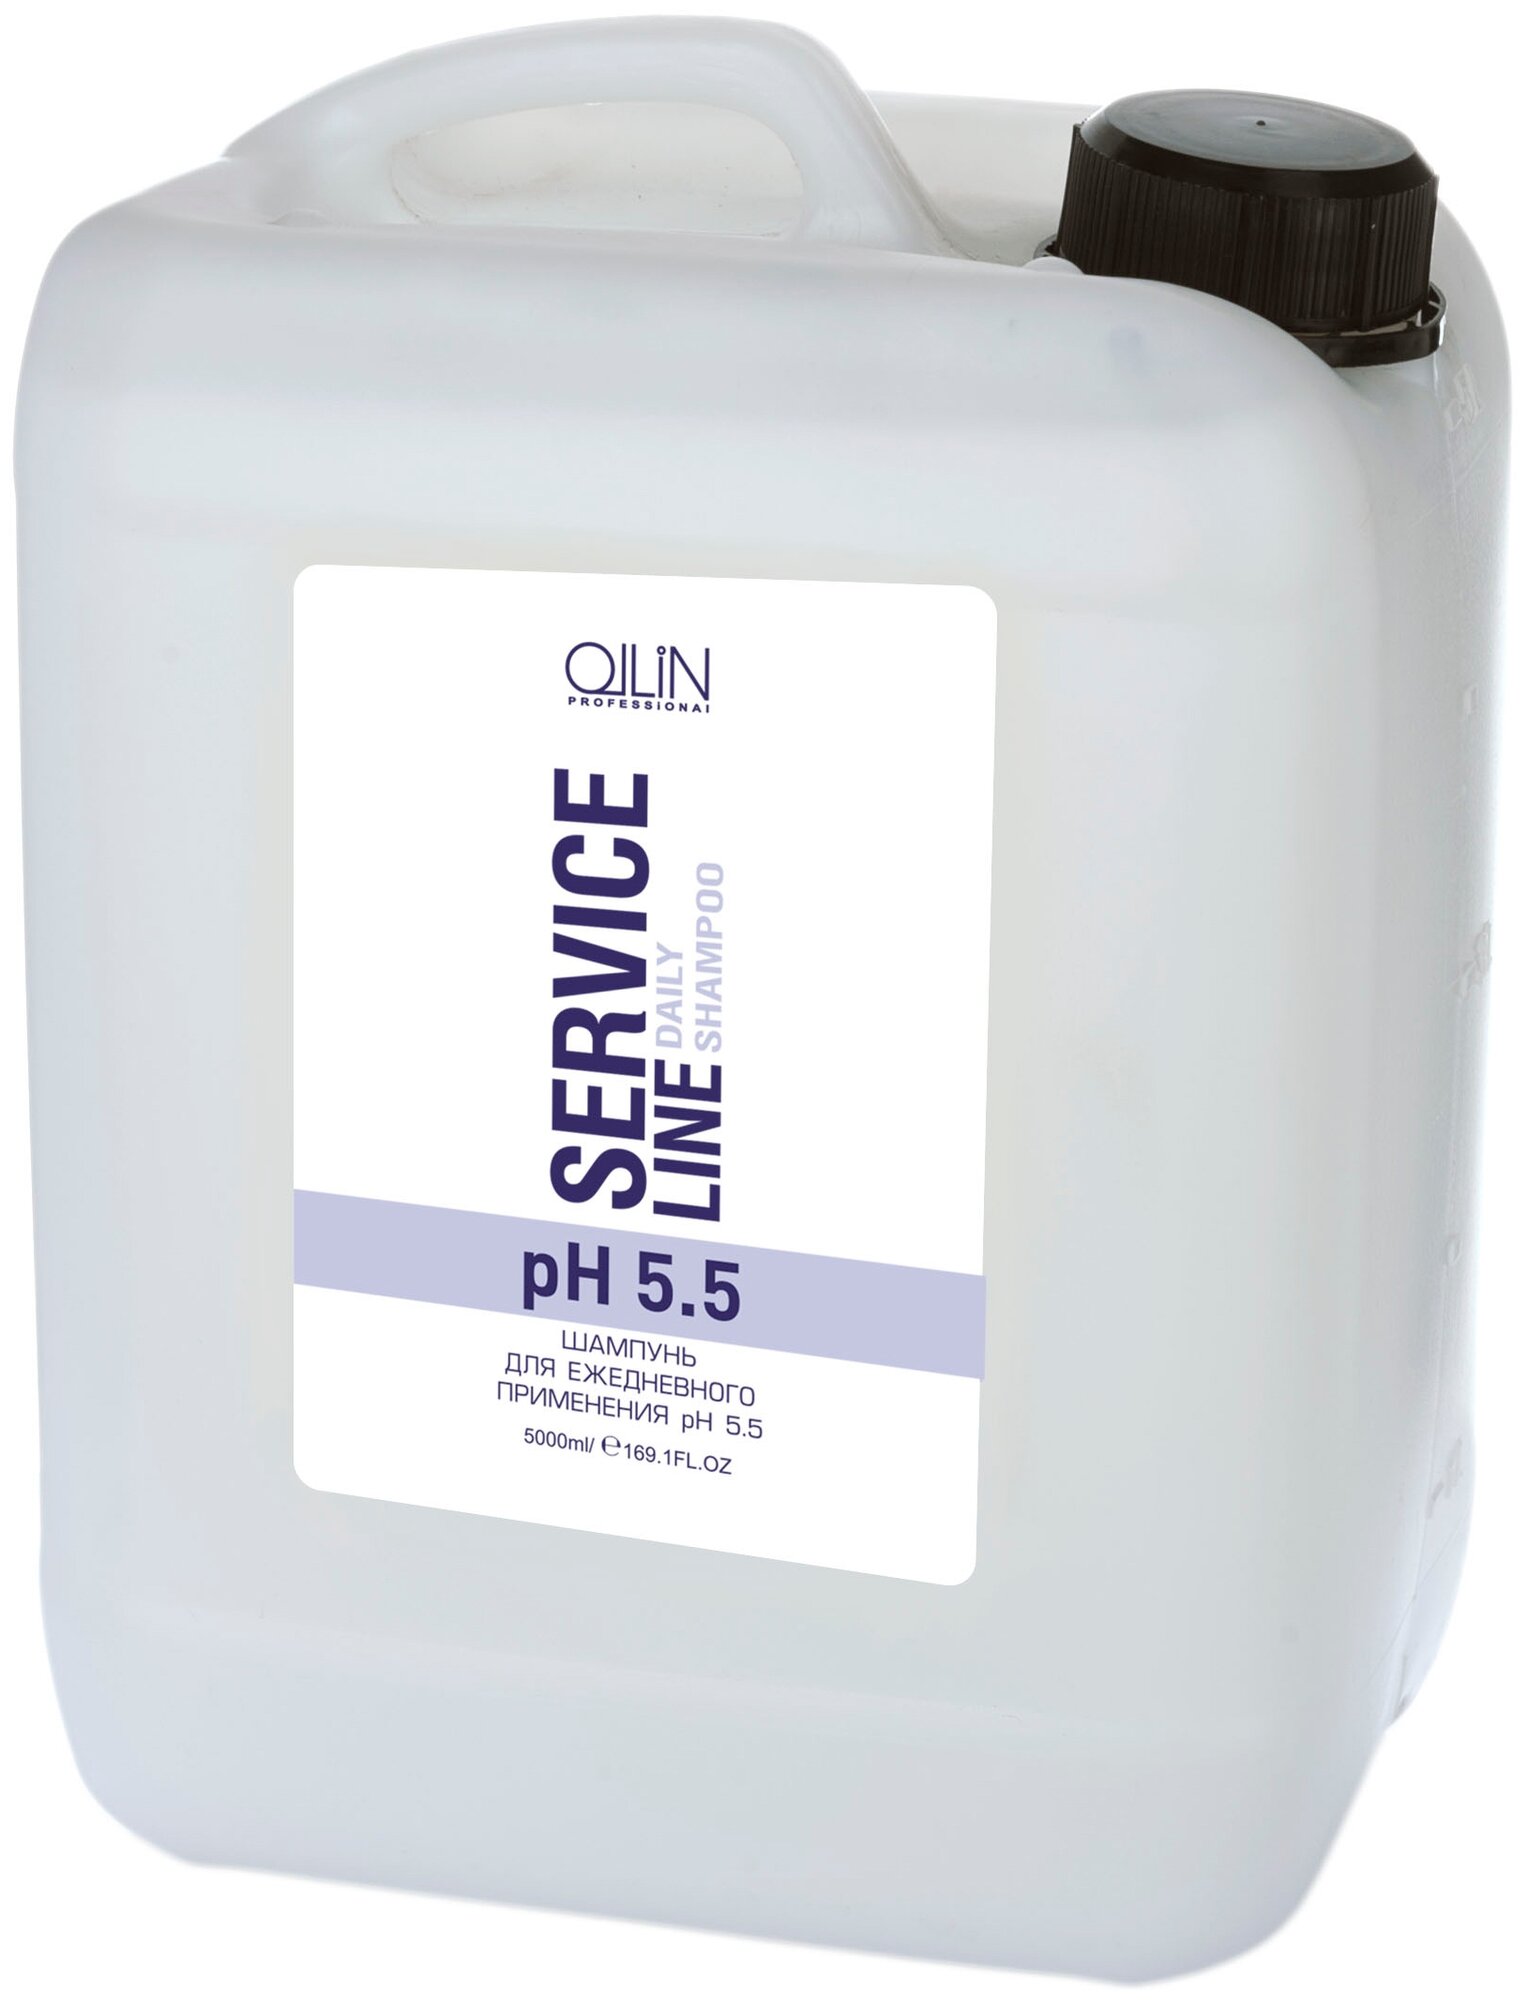 OLLIN Professional шампунь Service Line Daily pH 5.5 для ежедневного применения, 5000 мл